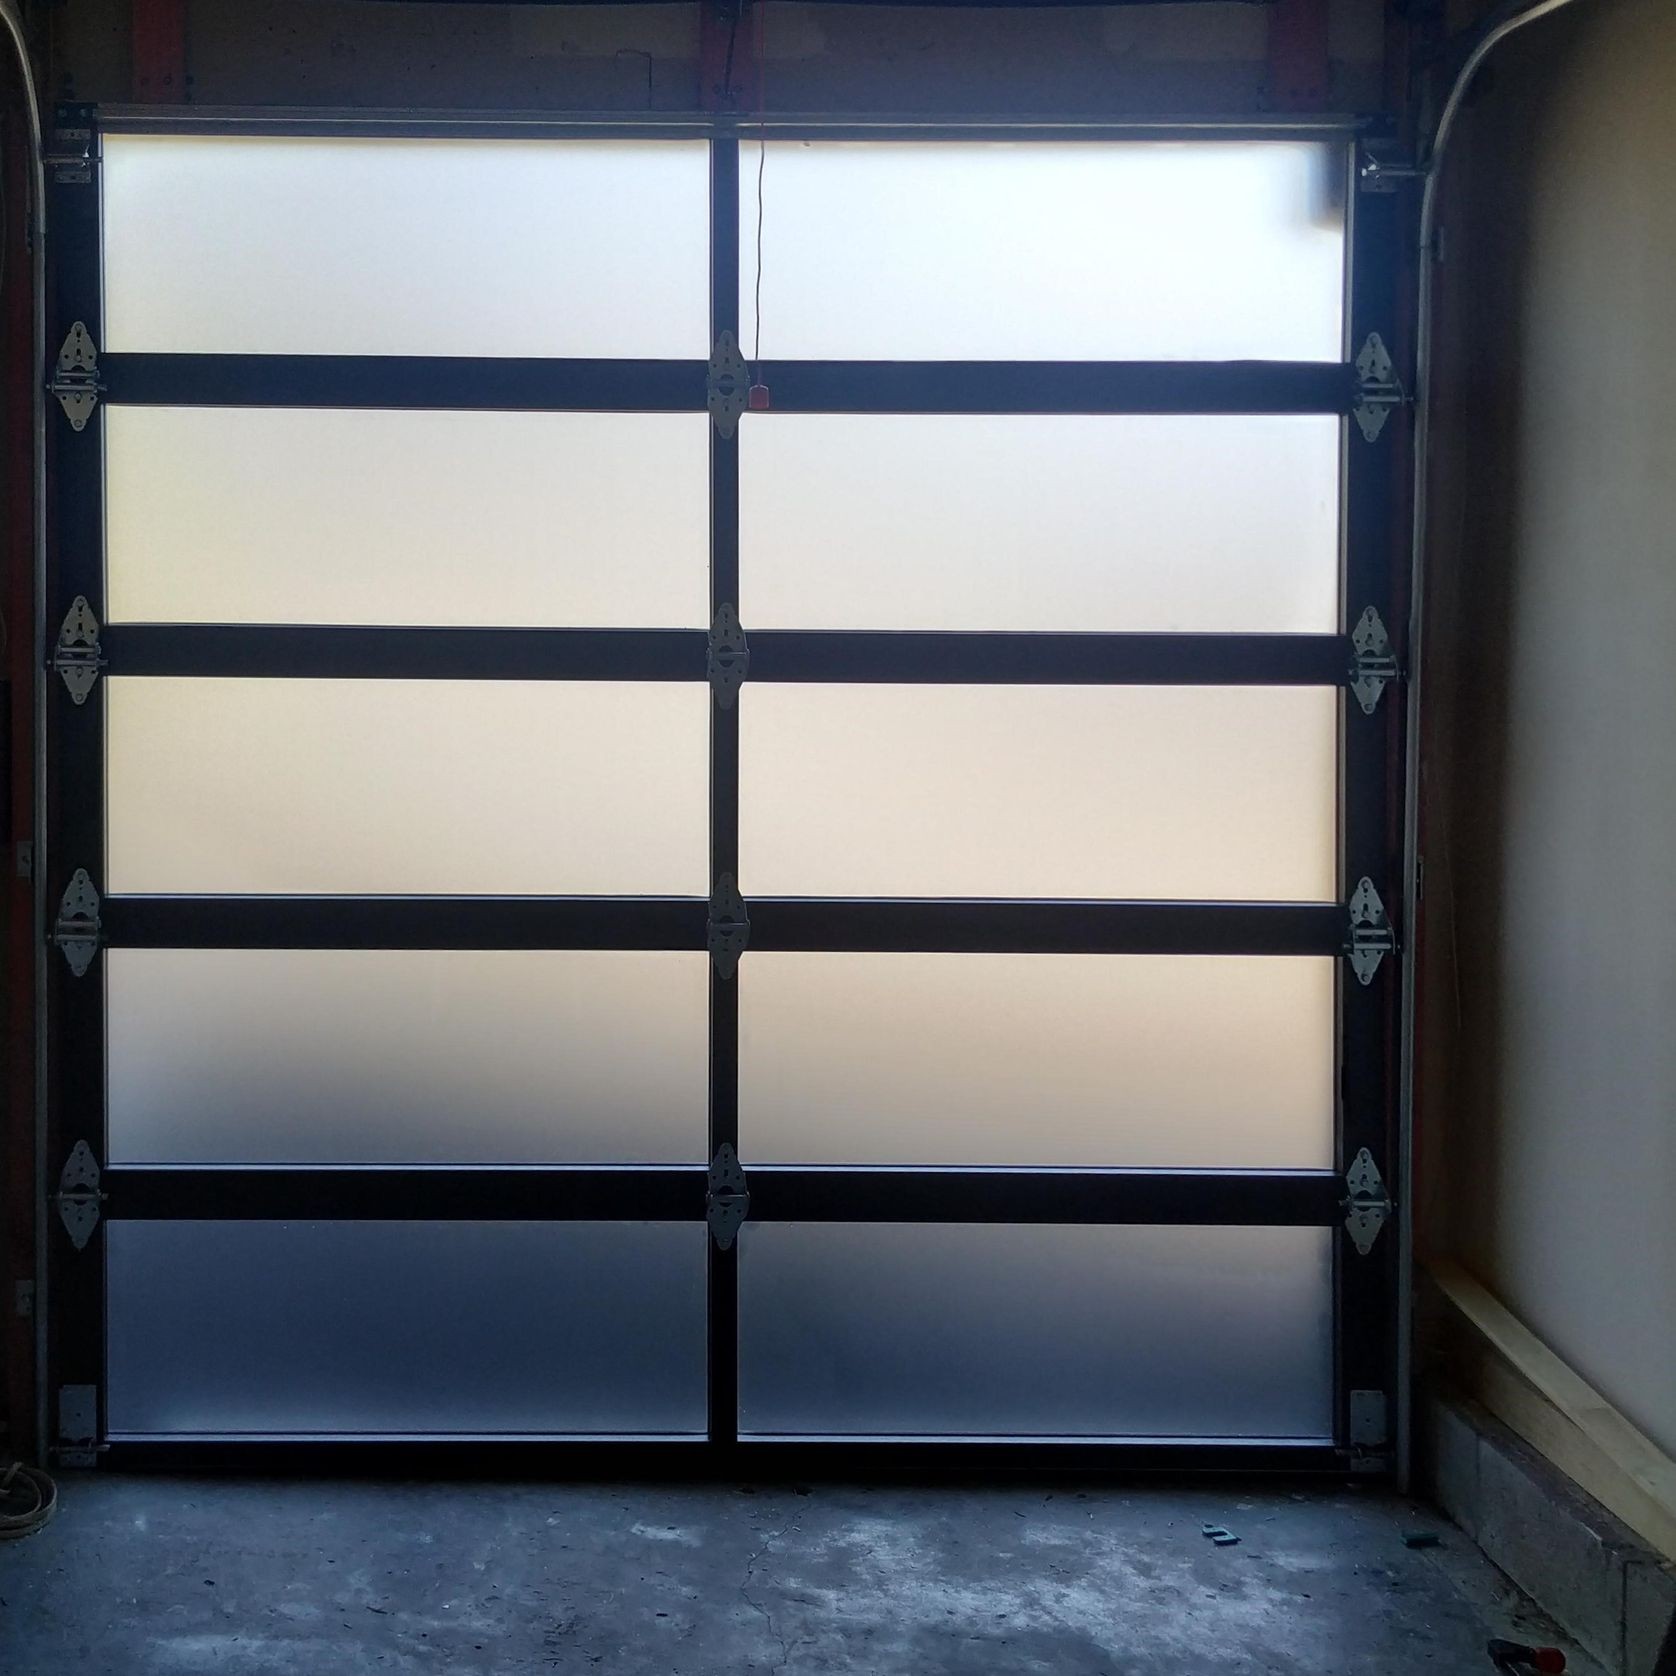 Plexiglass Custom Garage Door gallery detail image